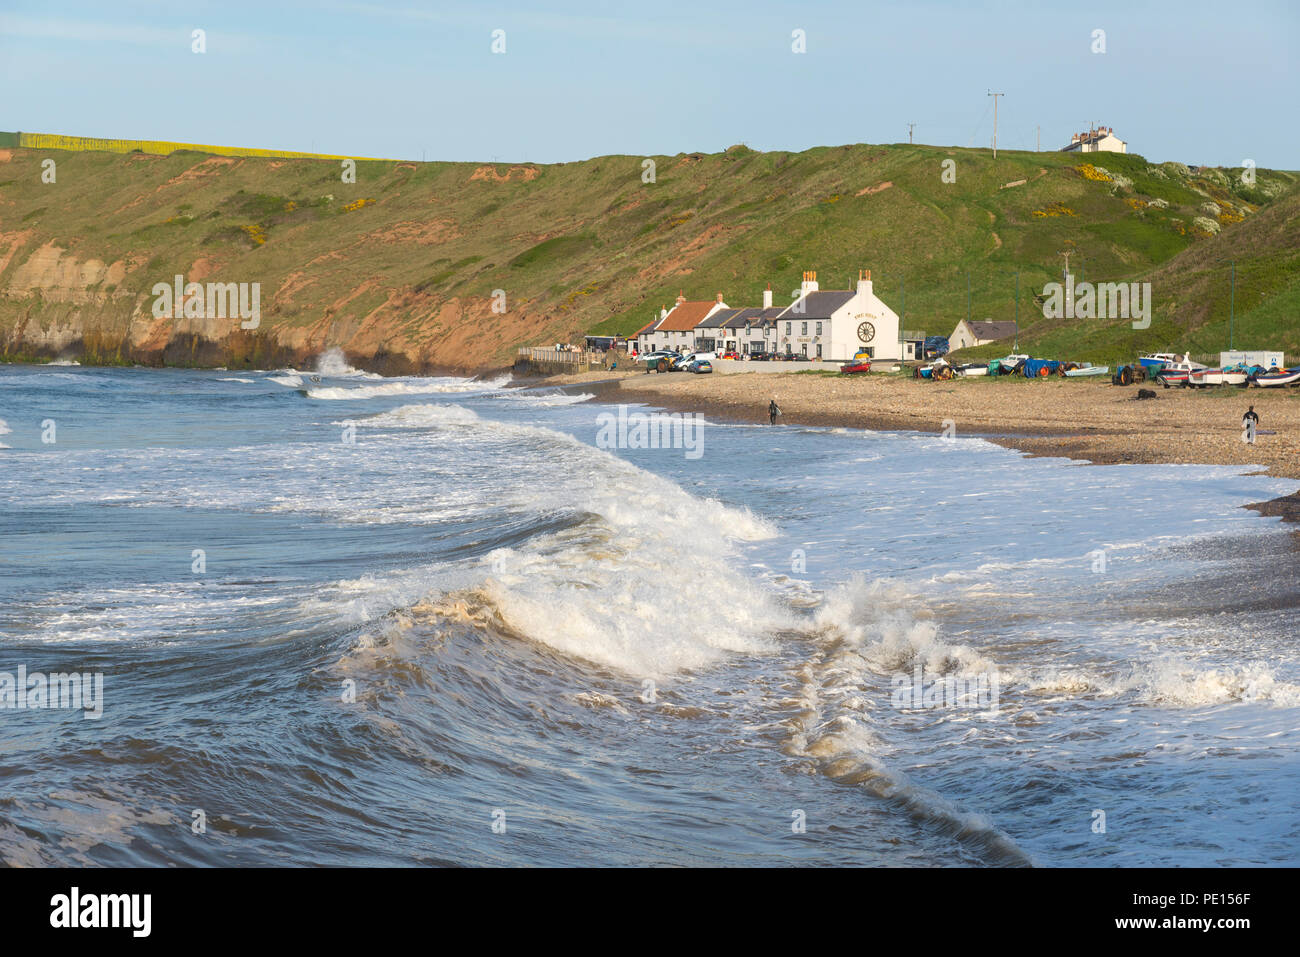 Grandi onde che si infrangono sulla spiaggia di cambs sulla costa del North Yorkshire, Inghilterra. Un bel pomeriggio di primavera. Foto Stock